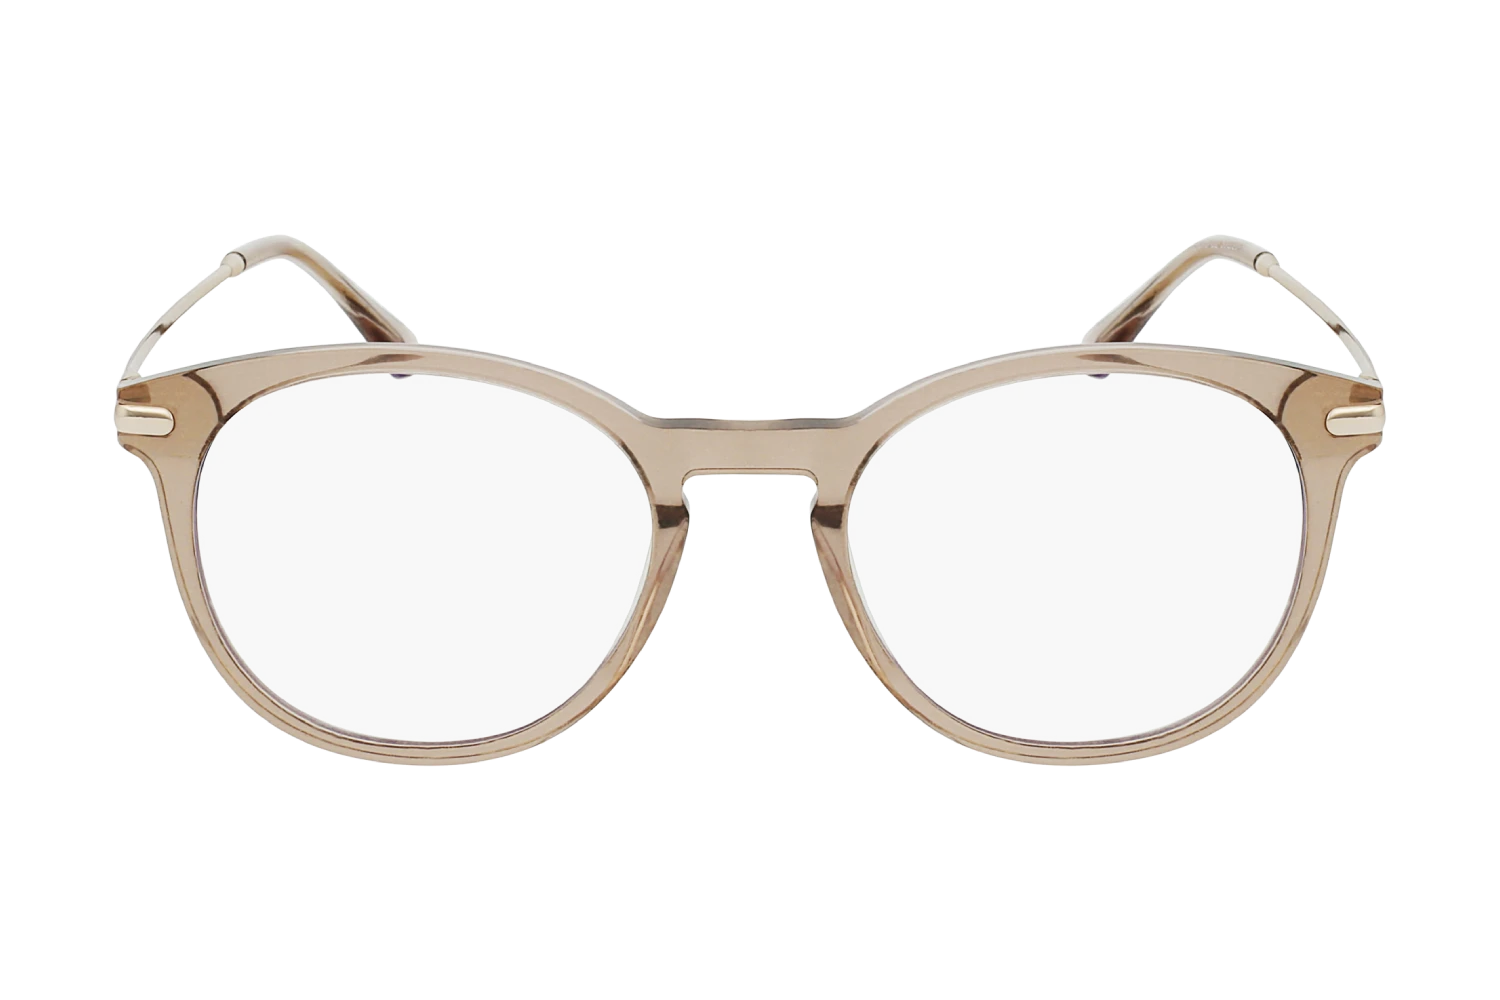 Venice brown vintage eyeglasses